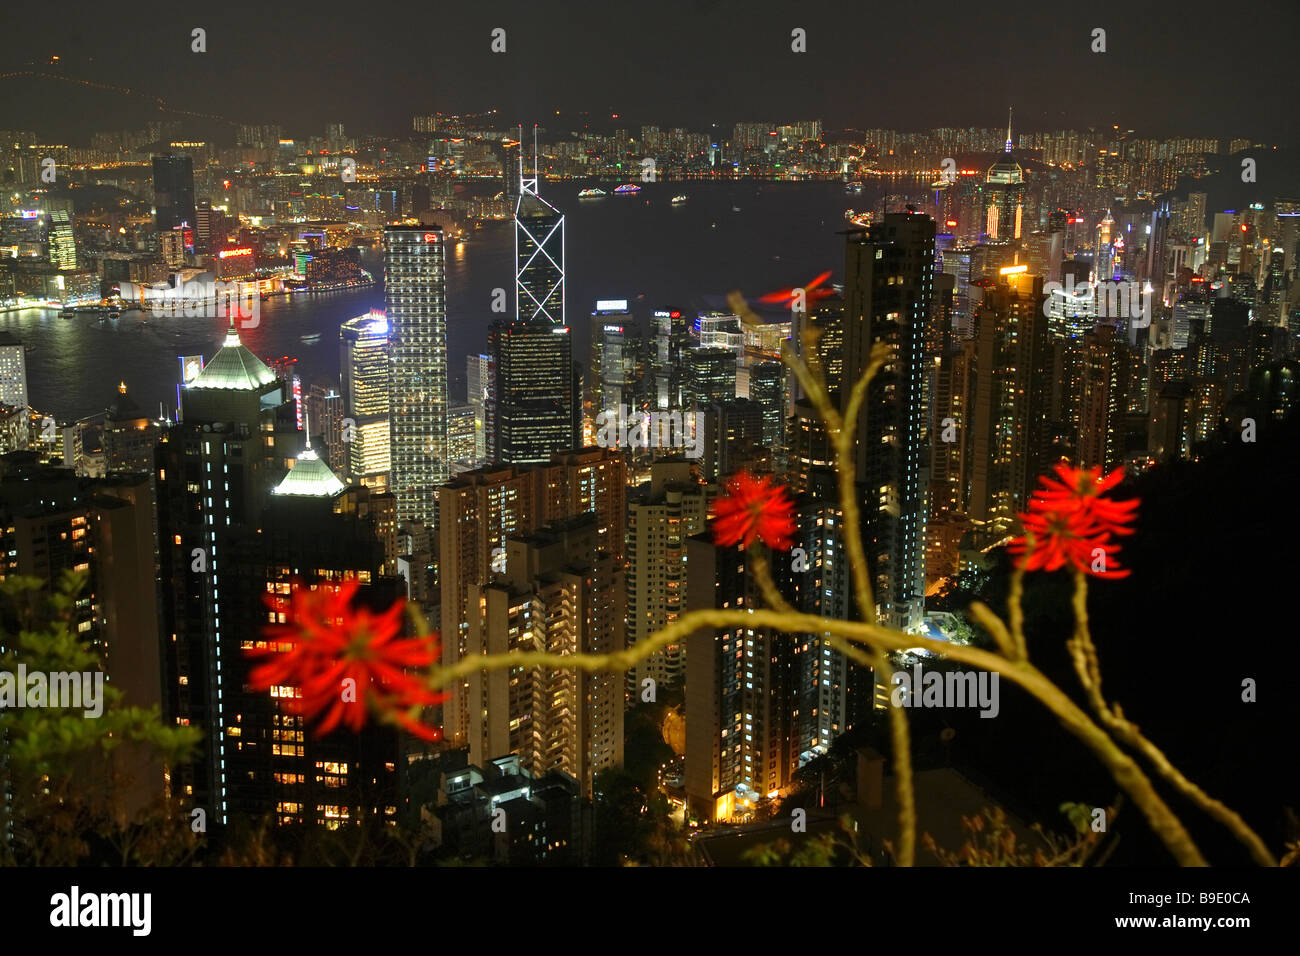 Cityscape of Hong Kong at night, China Stock Photo